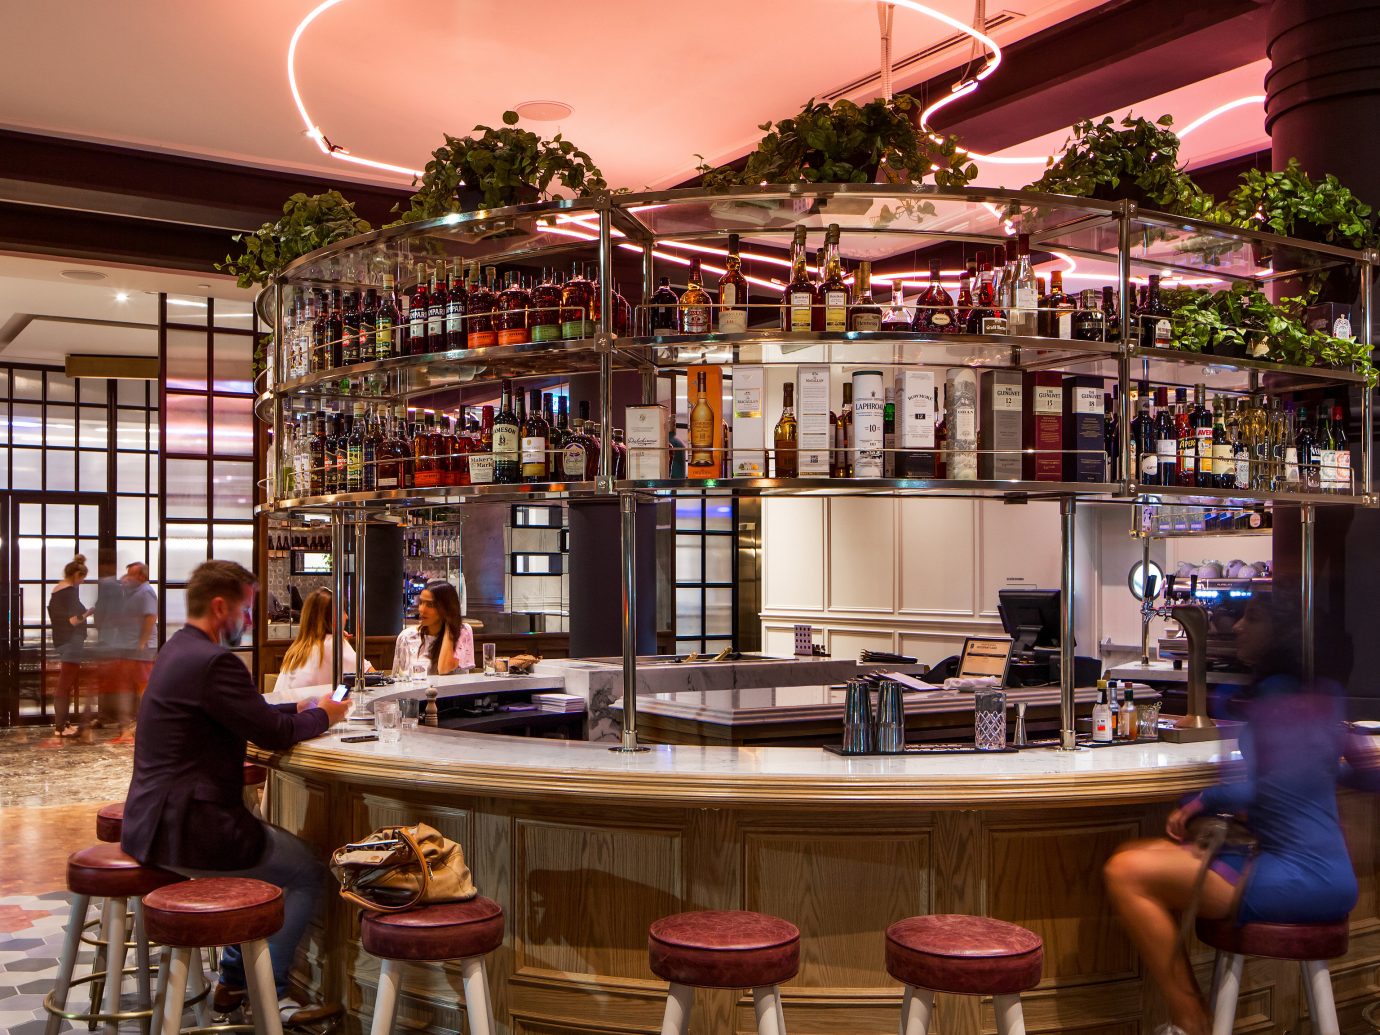 Canada Hotels Toronto building restaurant Bar interior design café several